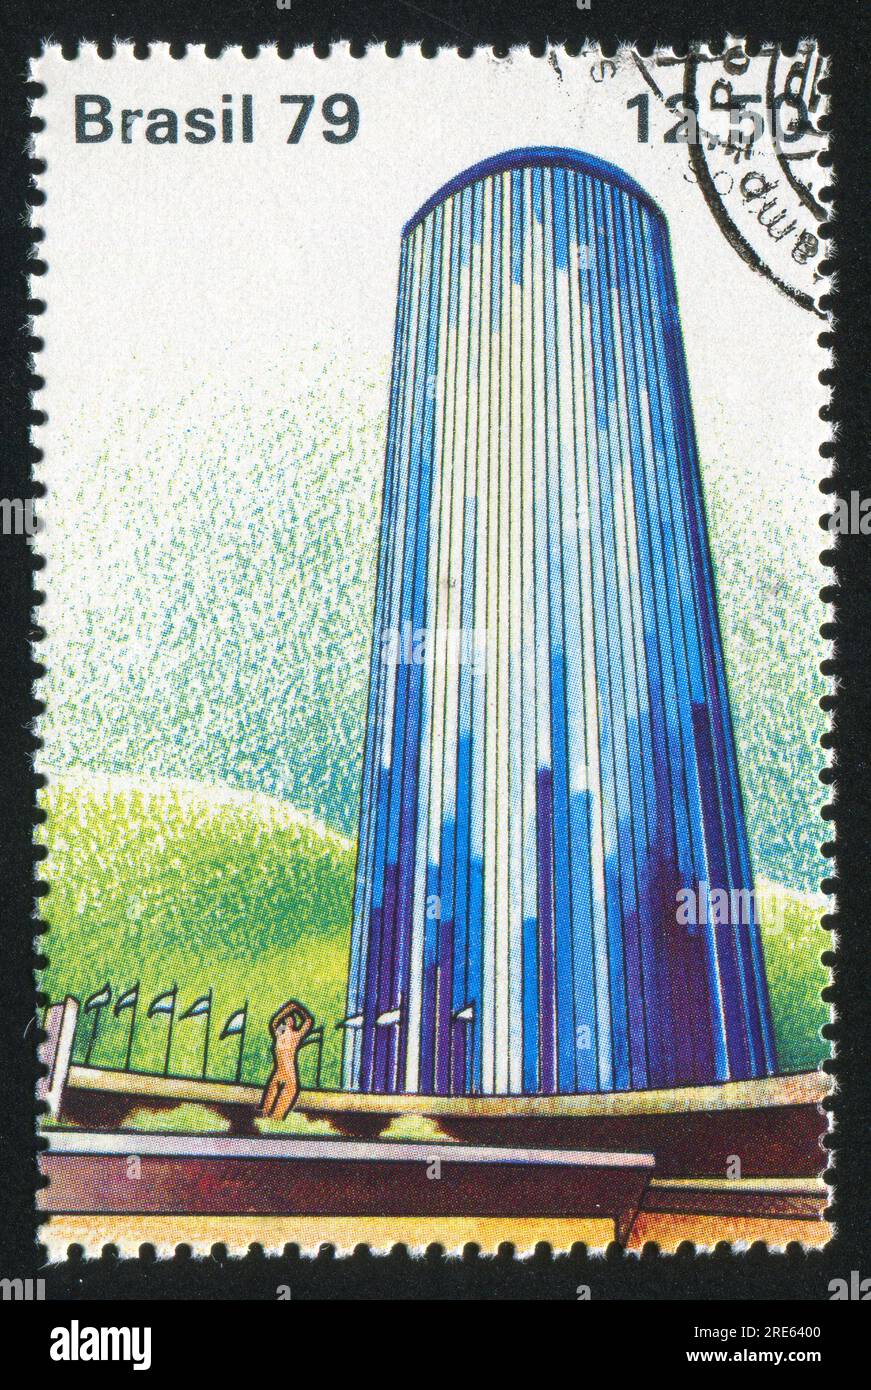 BRÉSIL - CIRCA 1979 : timbre imprimé par le Brésil, montre Hôtel Nacional, Rio de Janeiro, circa 1979 Banque D'Images